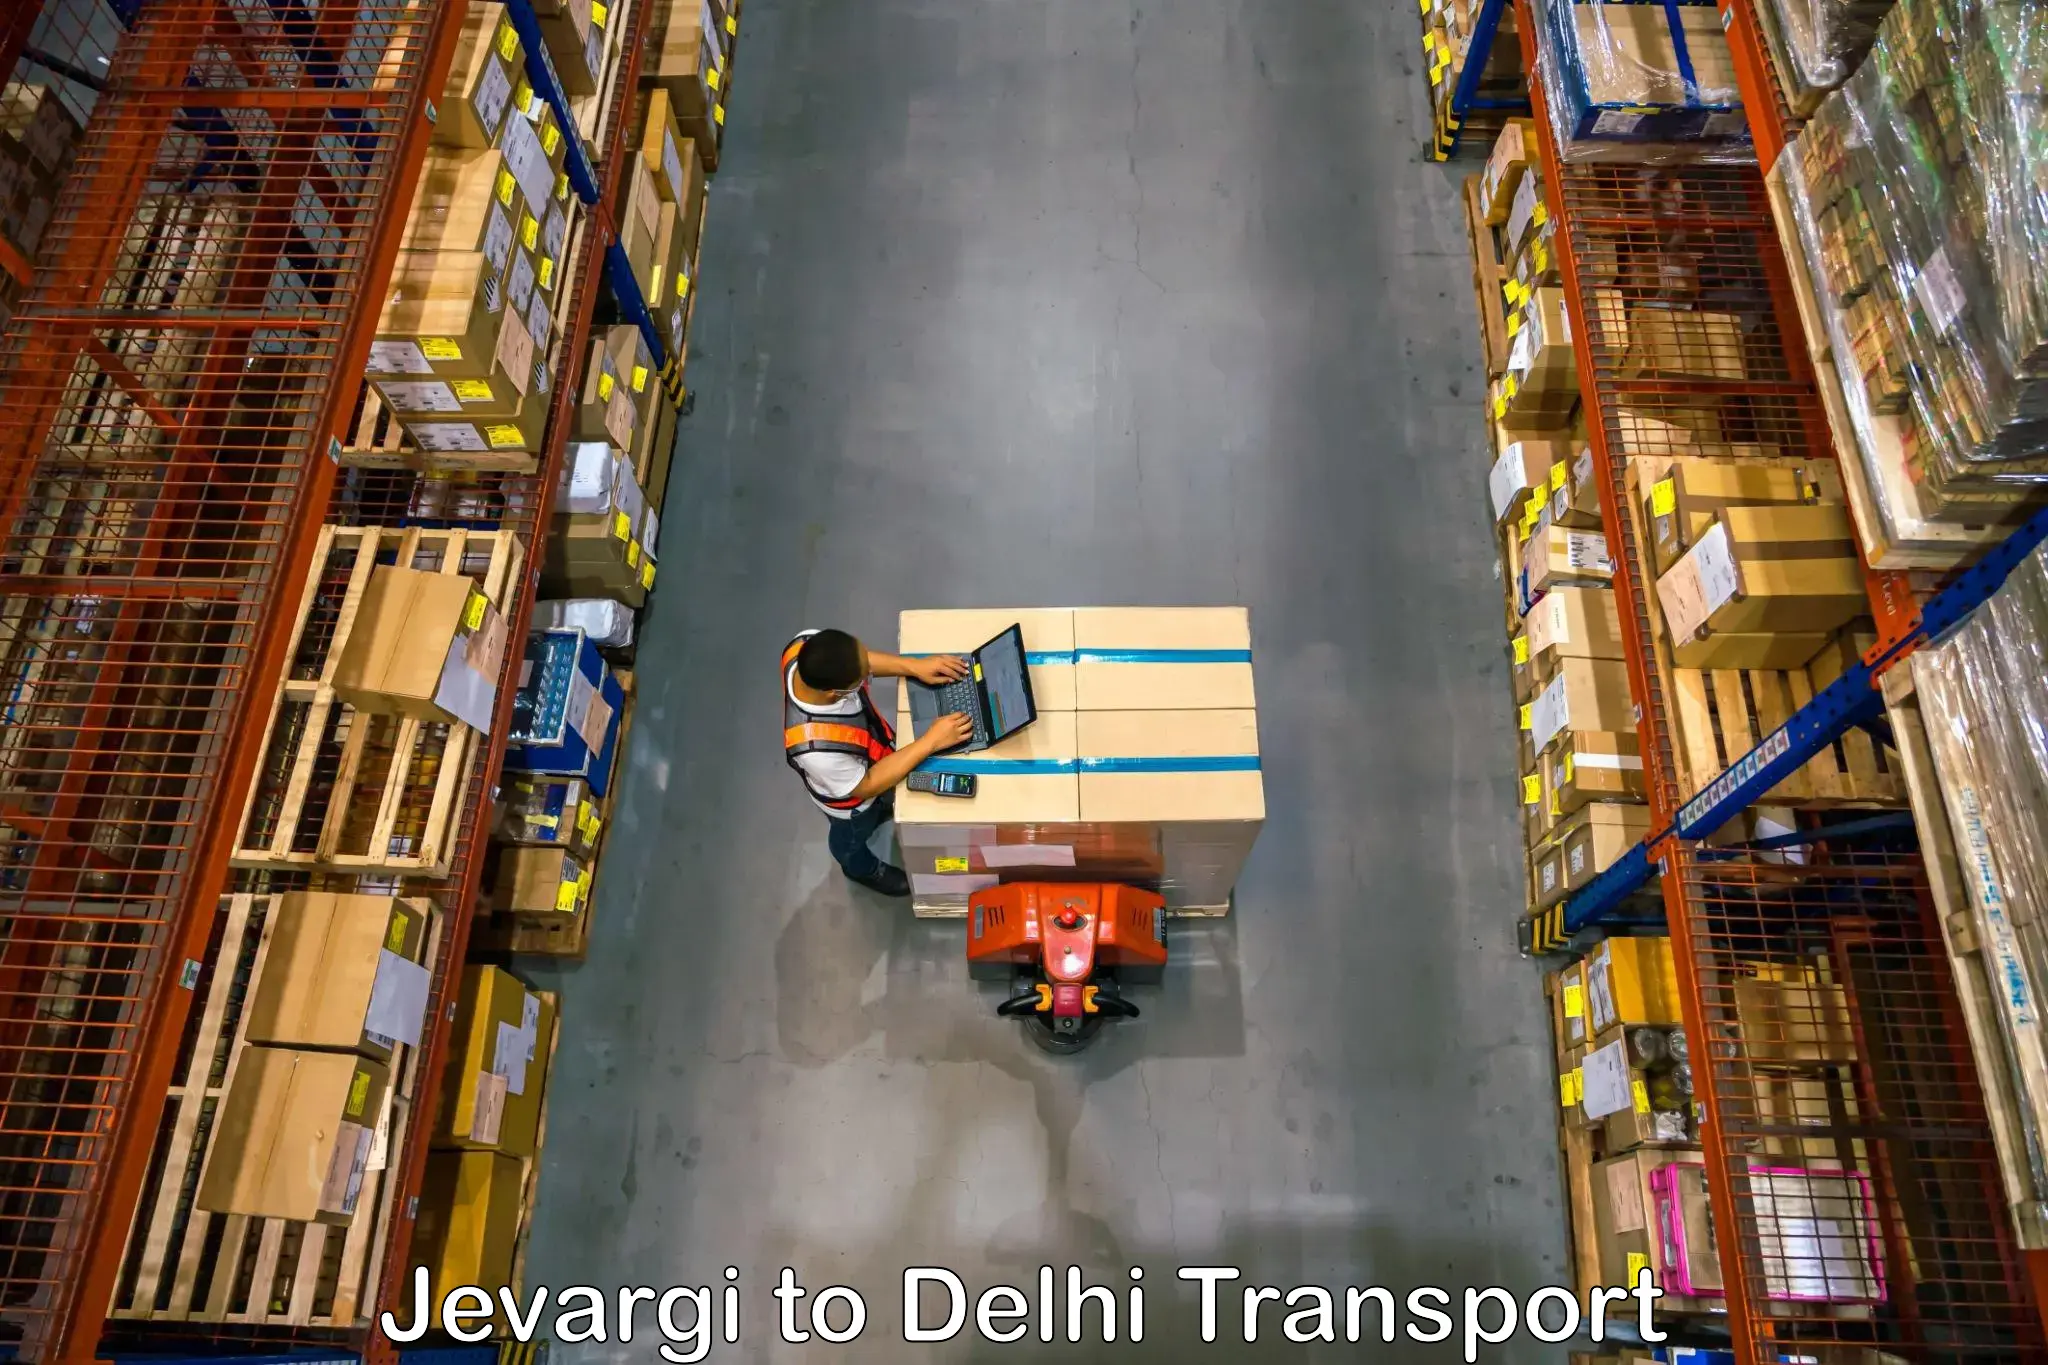 Express transport services Jevargi to East Delhi